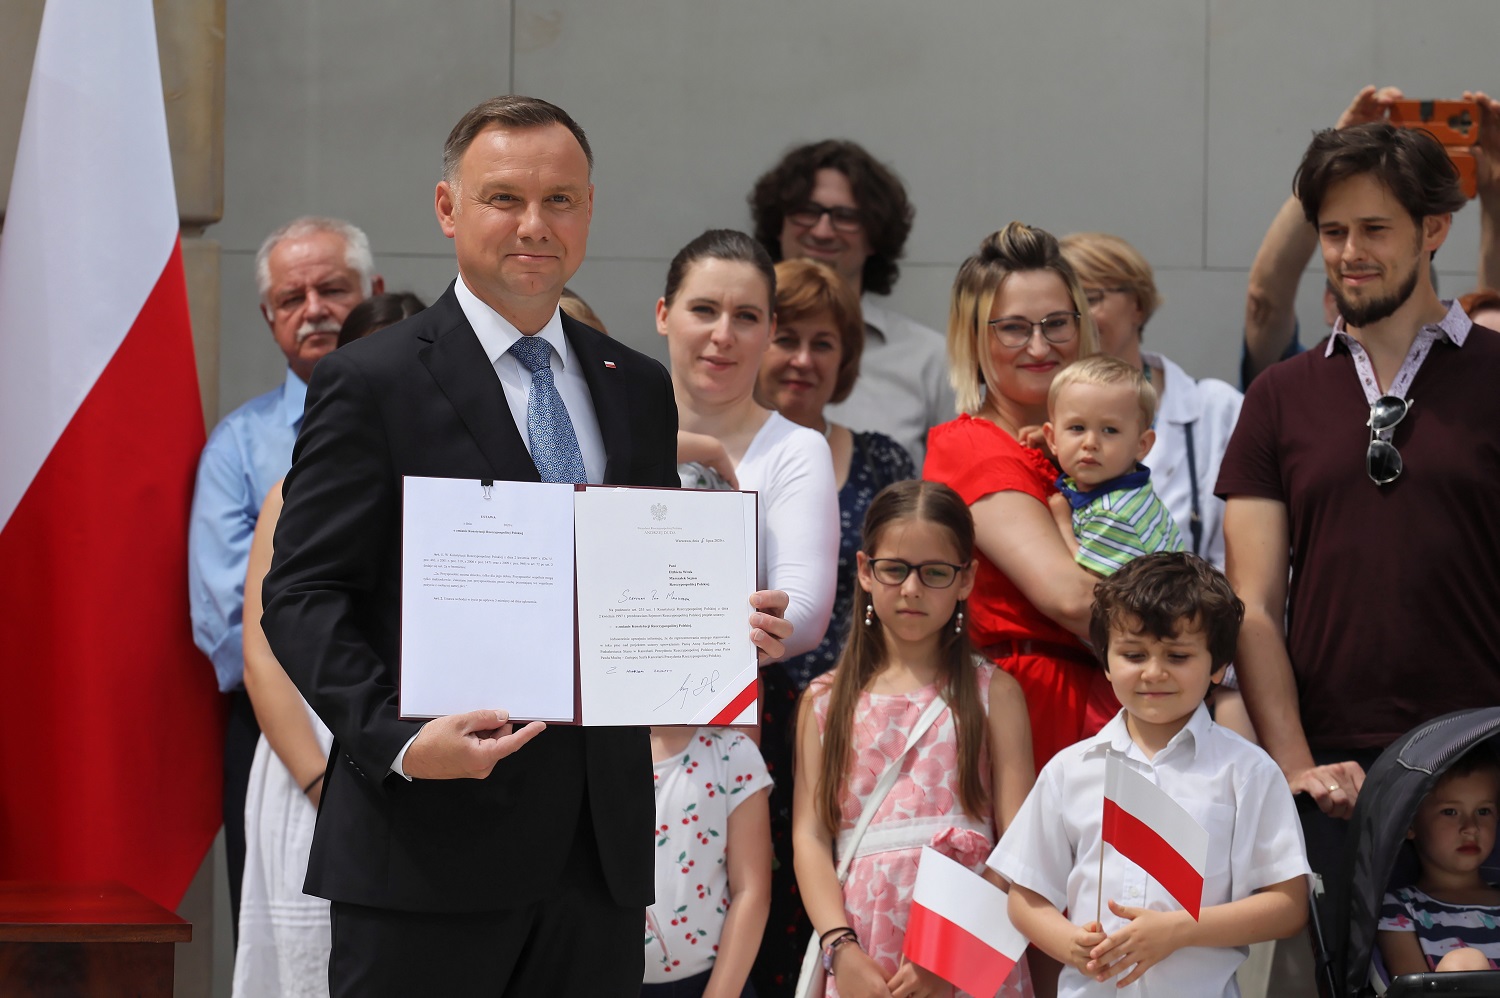 Lenkijos prezidentas A. Duda siūlo į Konstituciją įtraukti draudimą tos pačios lyties asmenų poroms įsivaikinti